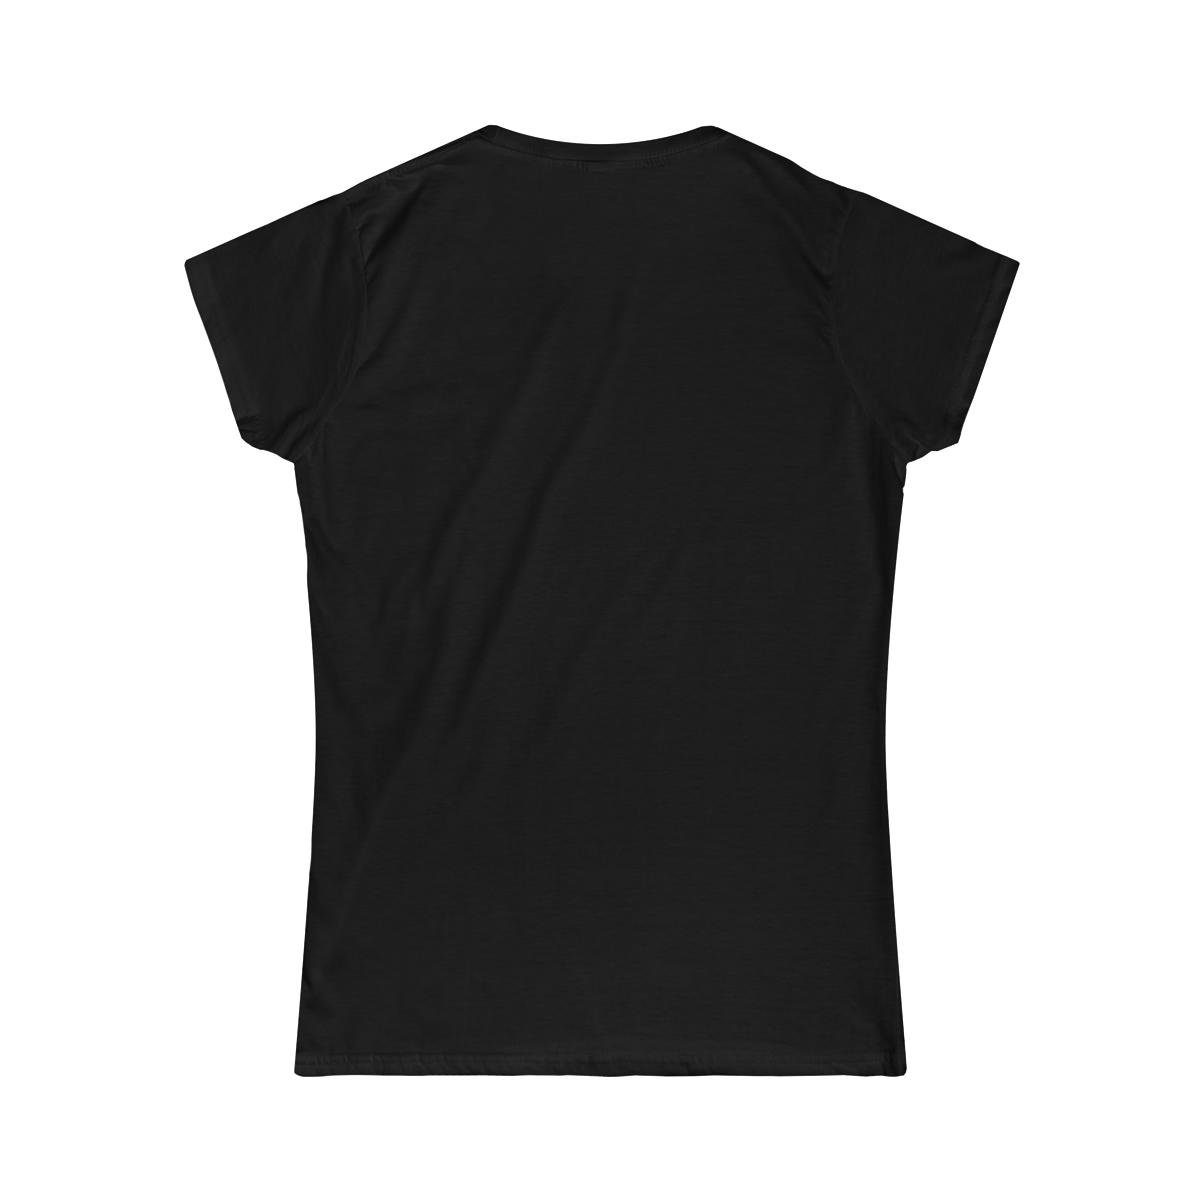 Crumbacher – Incandescent Women’s Short Sleeve Tshirt